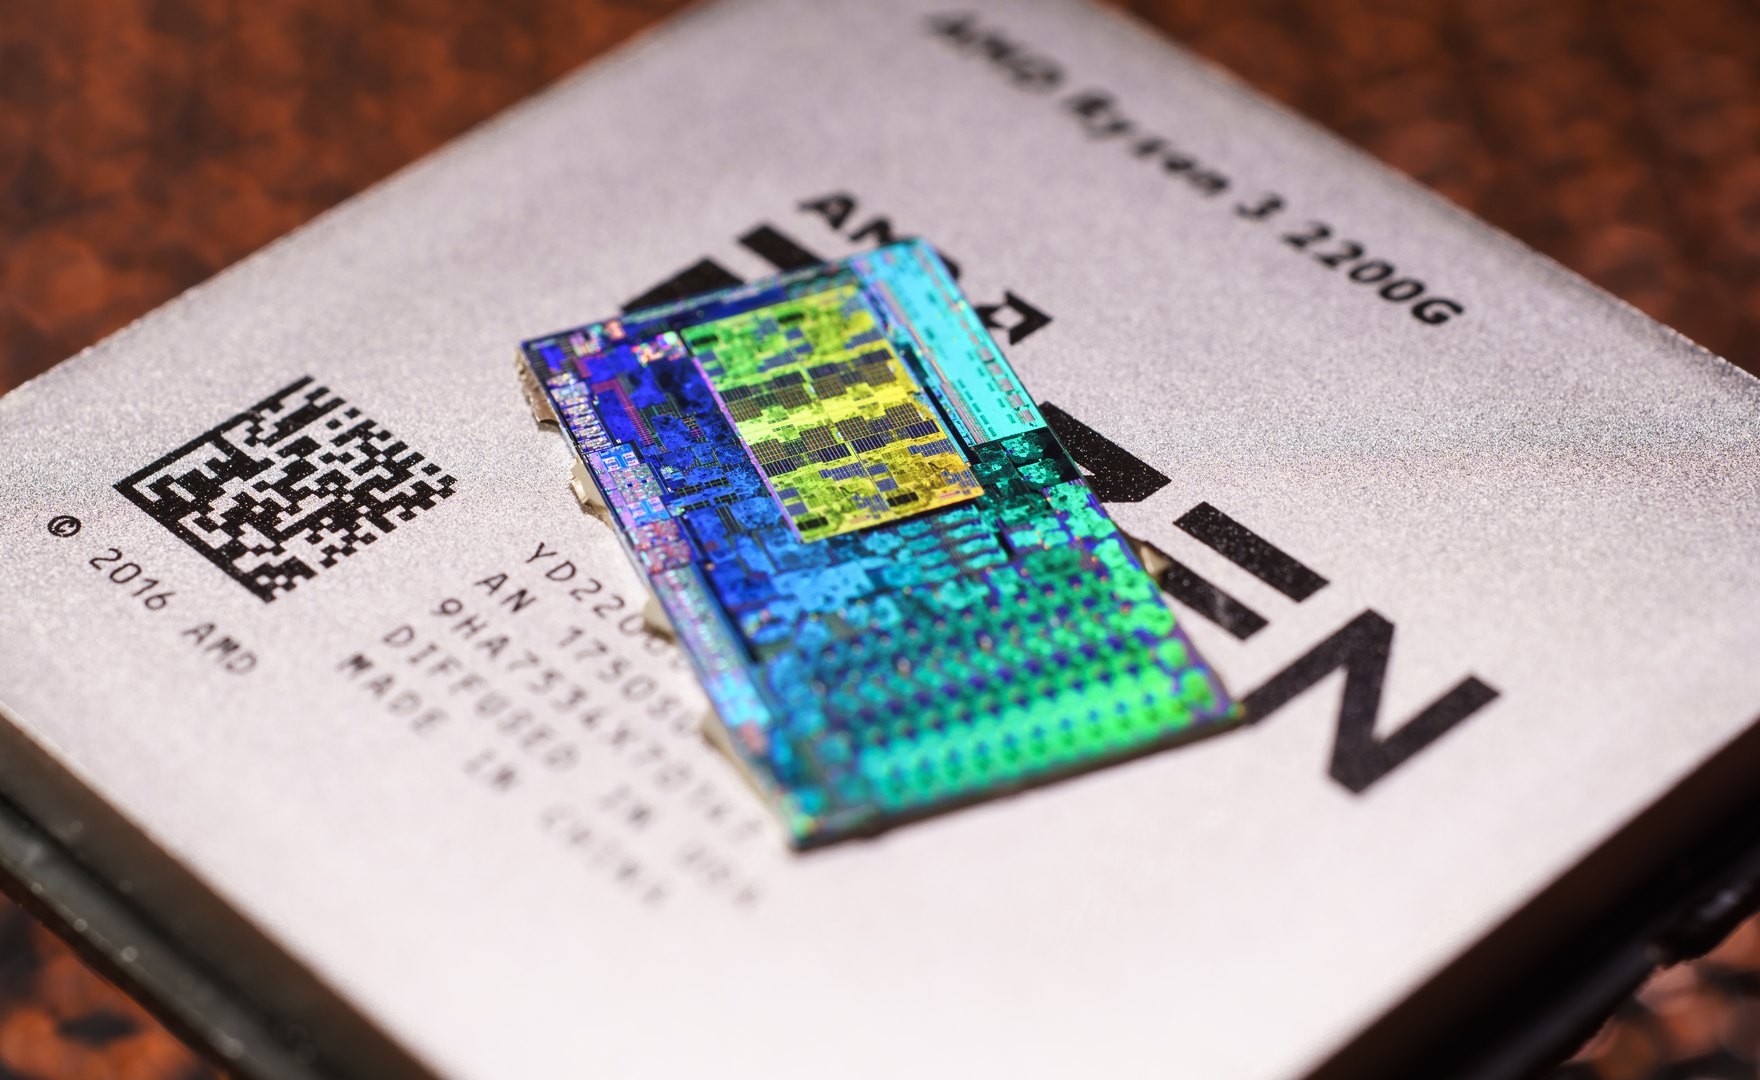 Renoir, il primo processore AMD a supportare memorie LPDDR4X?